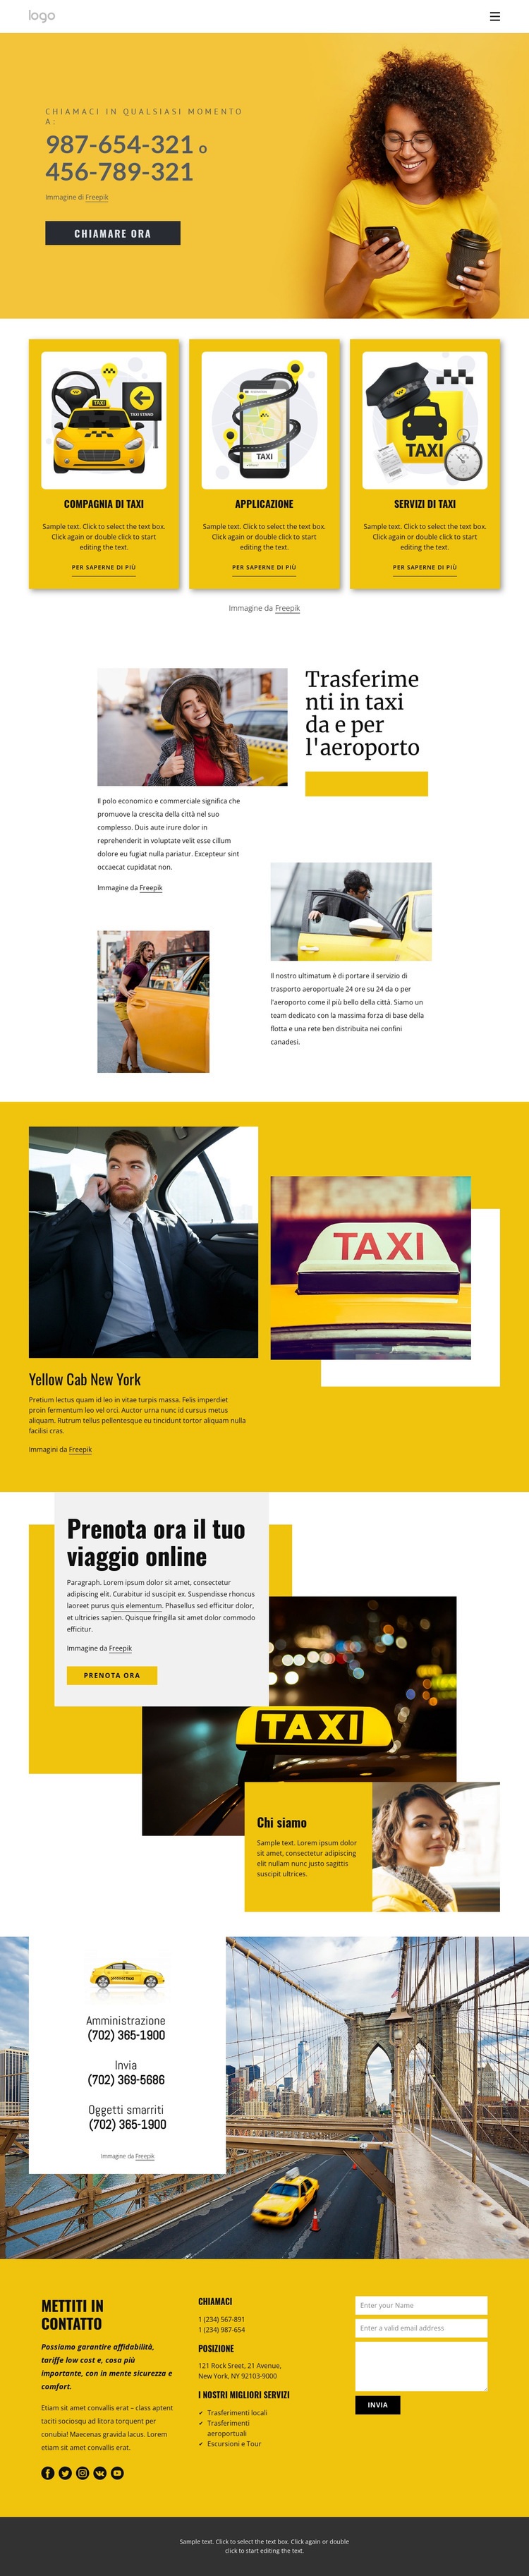 Servizio taxi di qualità Progettazione di siti web